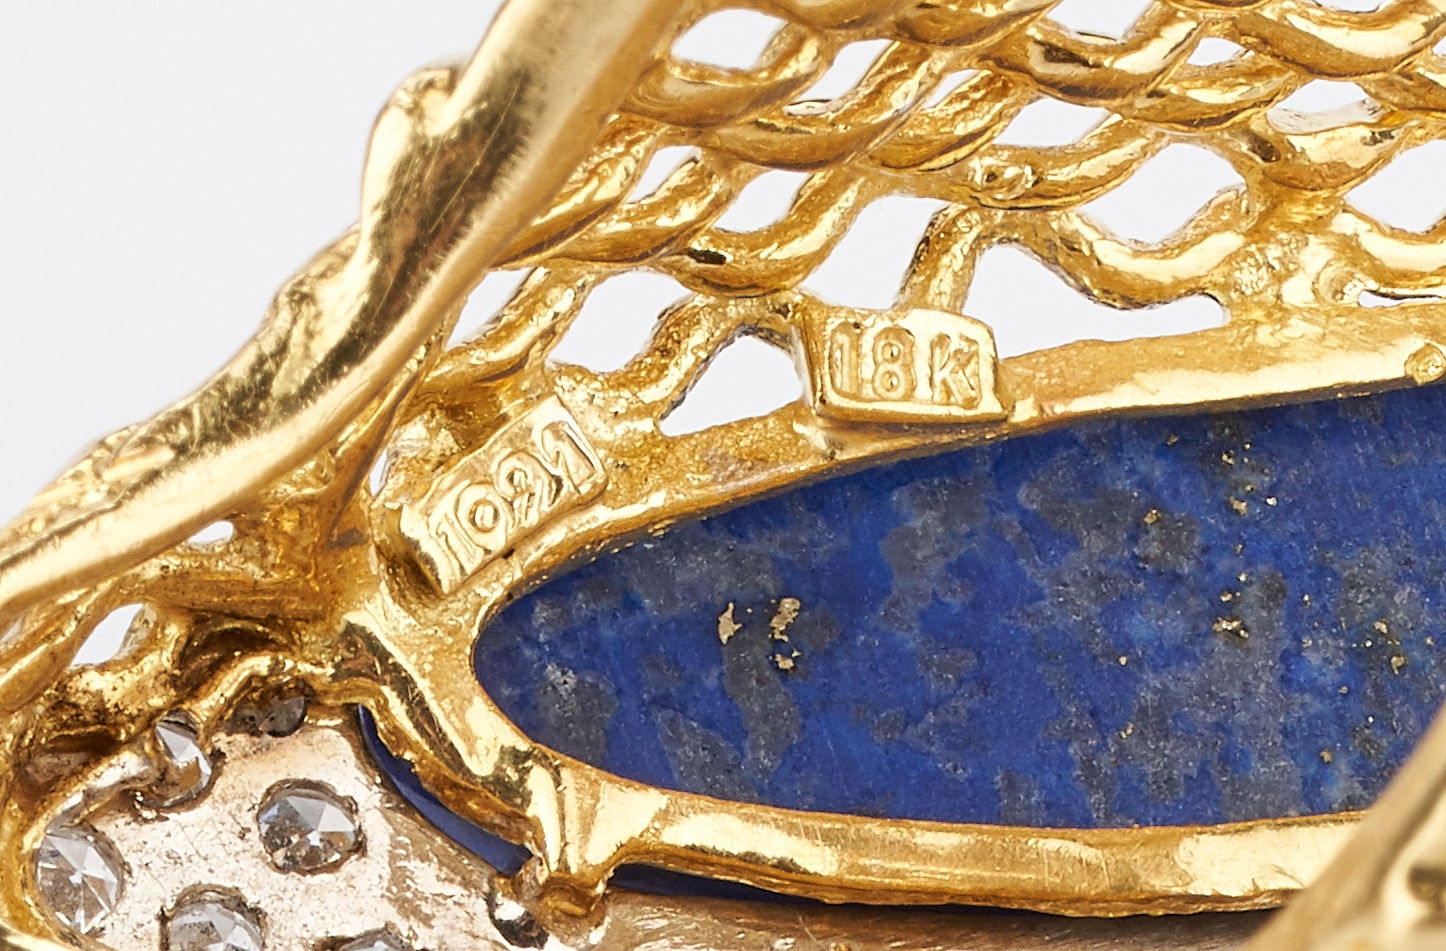 Lot 414: 3 Ladies Gold, Turquoise, & Lapis Lazuli Rings